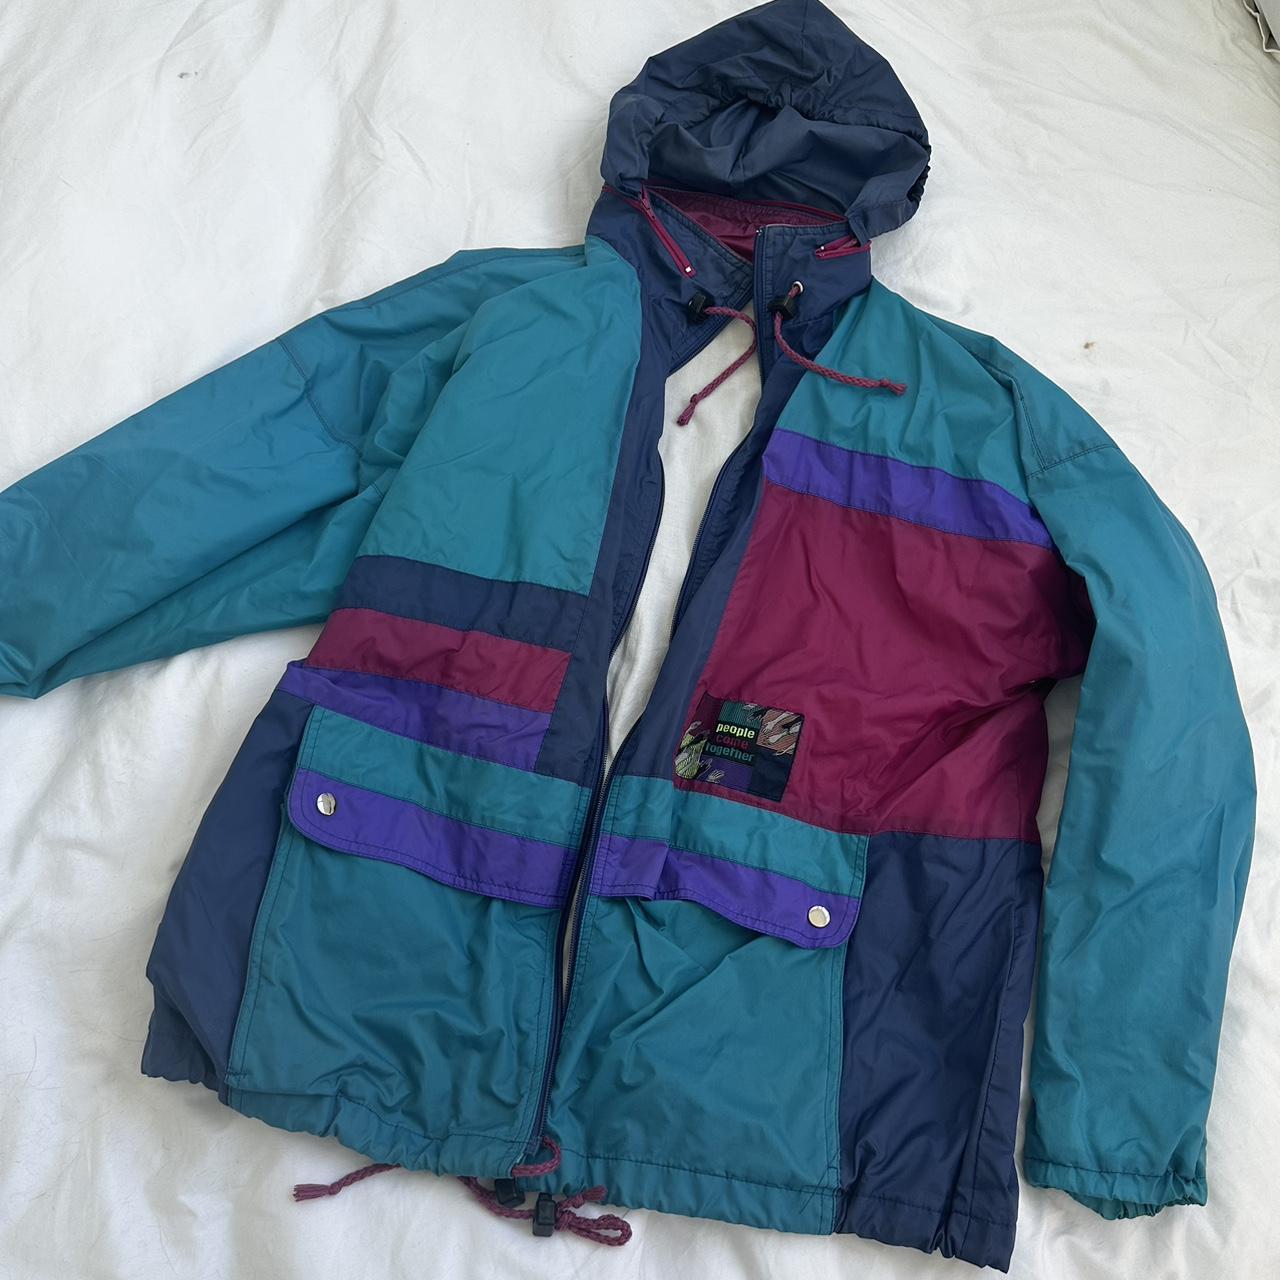 Multicolour vintage parka coat. Unisex. Size L.... - Depop